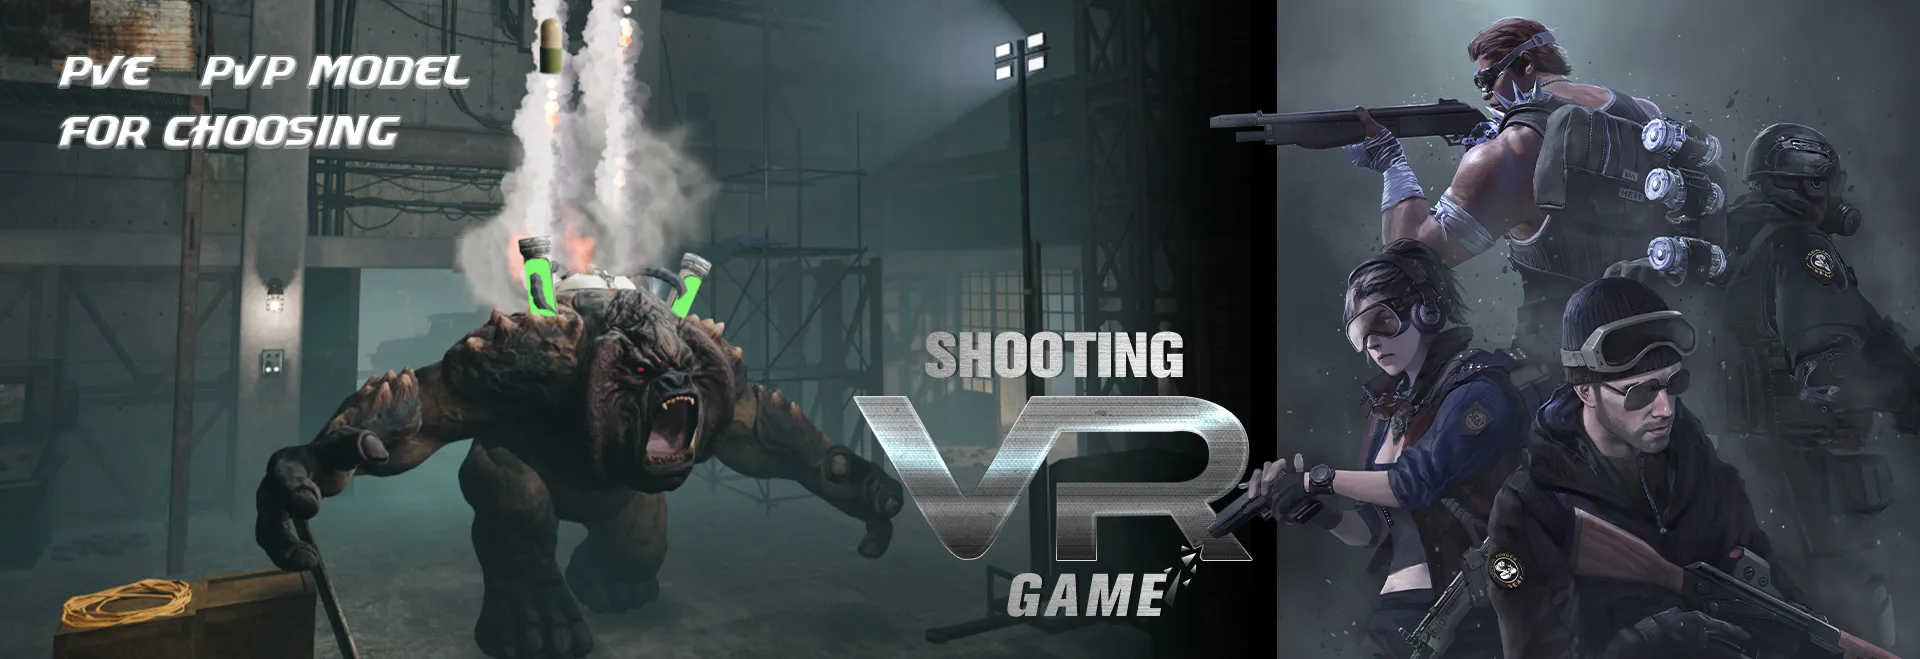 Trò chơi bắn súng VR